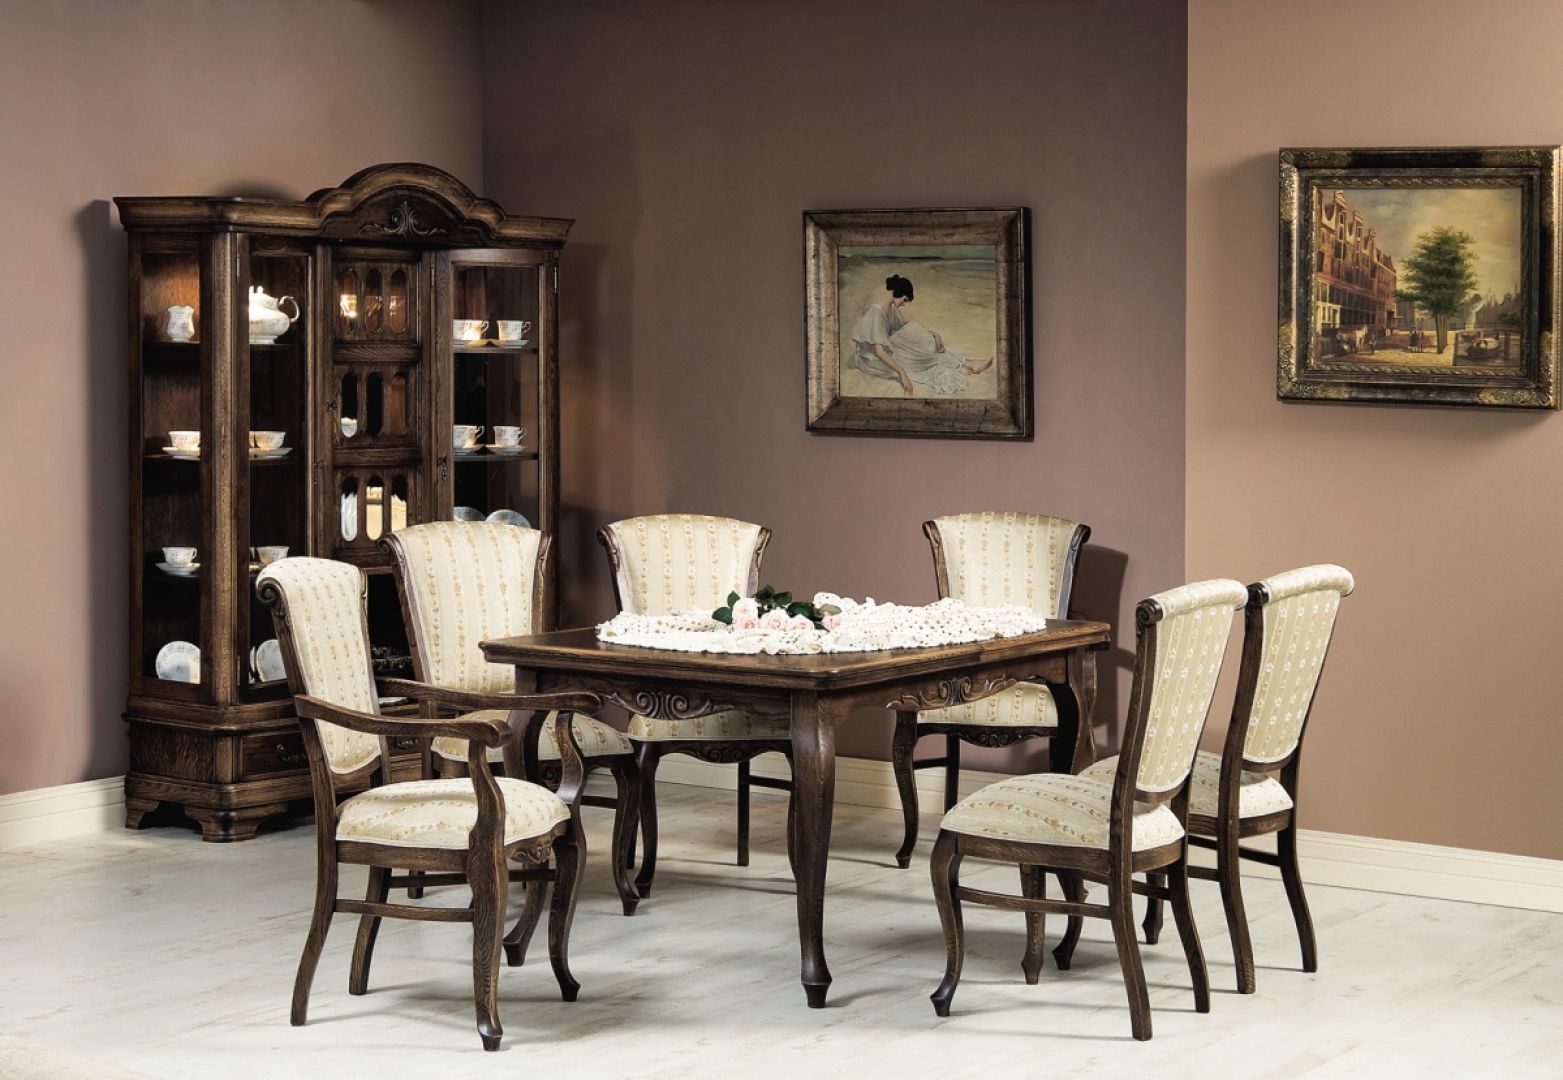 Kolekcja Marjani to gustowne stoły, krzesła, barki i kredensy, które świetnie sprawdzą się w dużej, stylizowanej na starą jadalni. Fot. Jafra